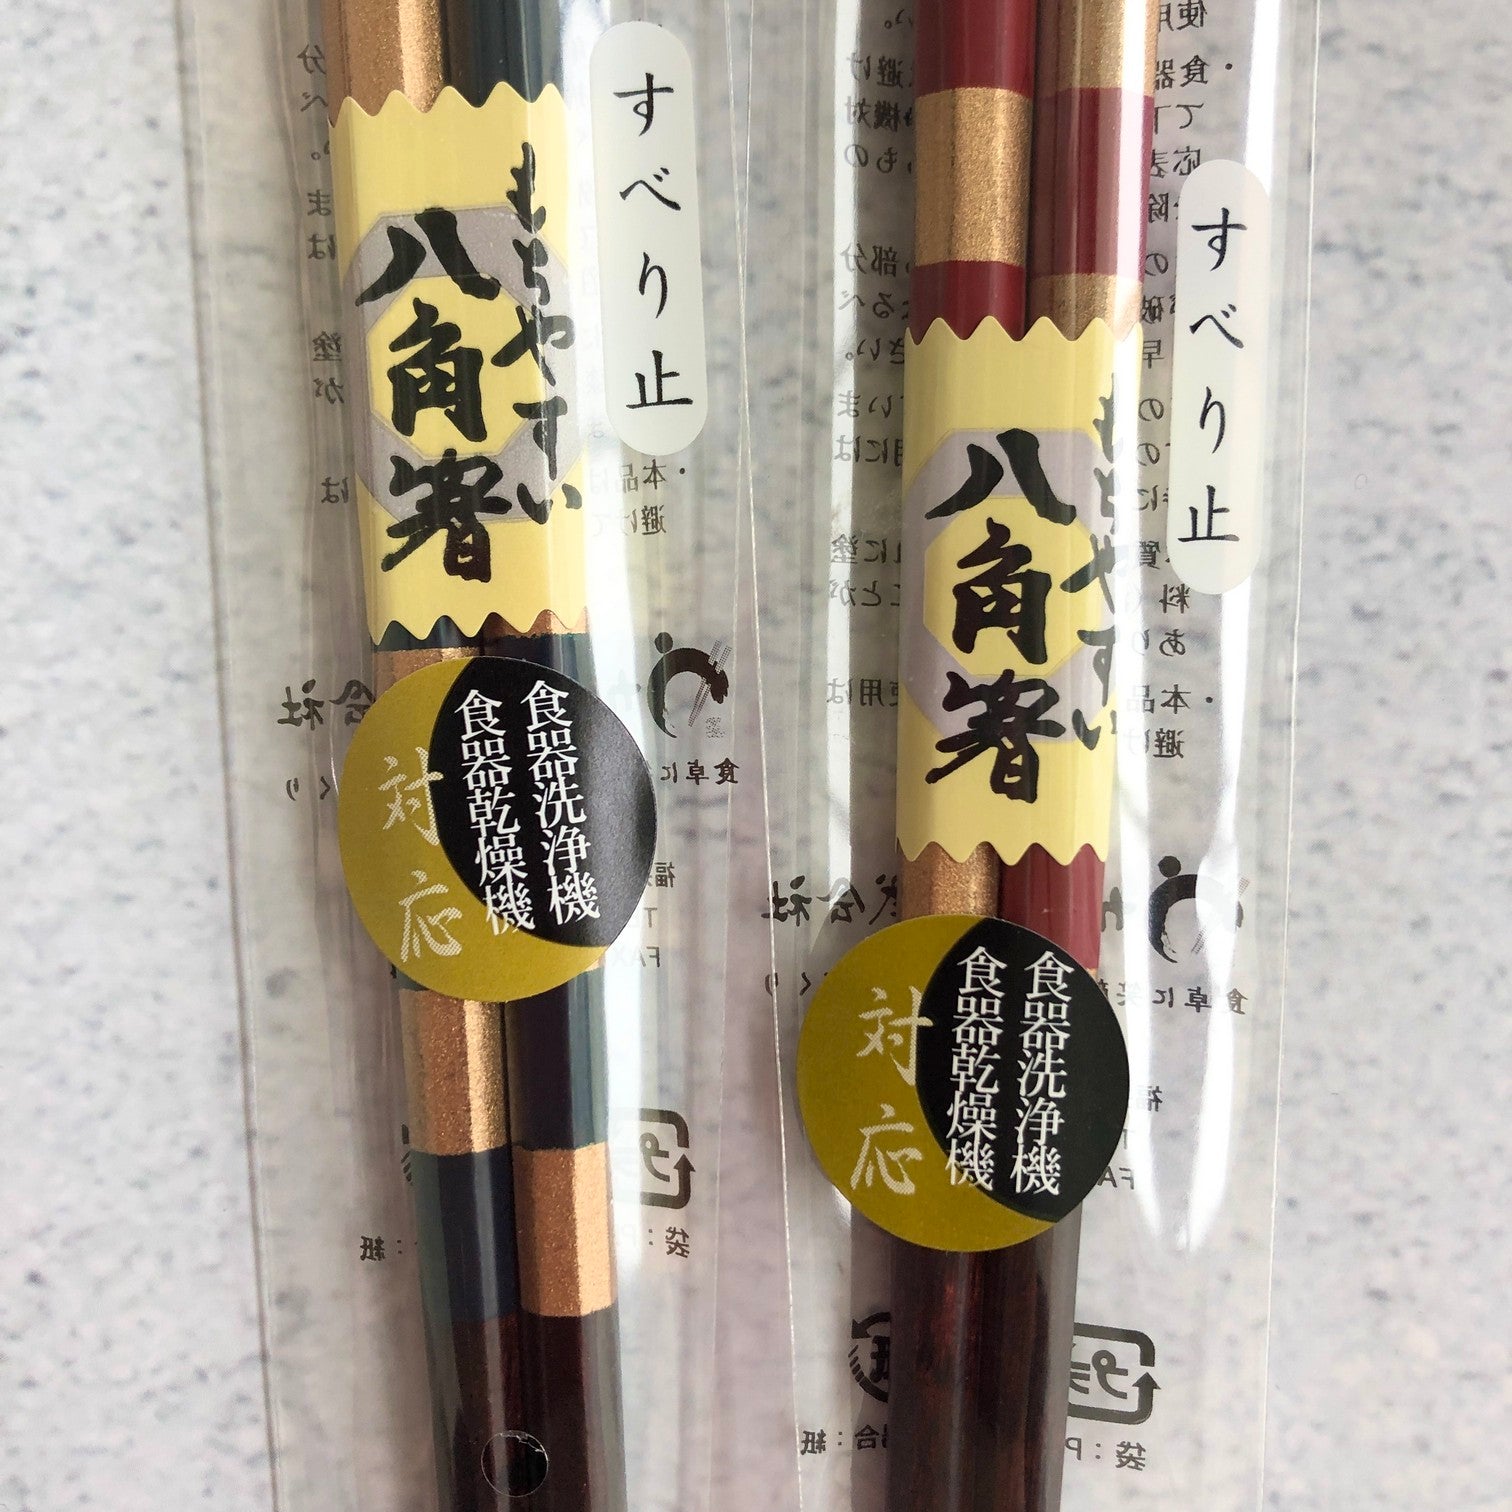 Kawai  八角金格子筷子23/21cm（洗碗机可用）2色可选